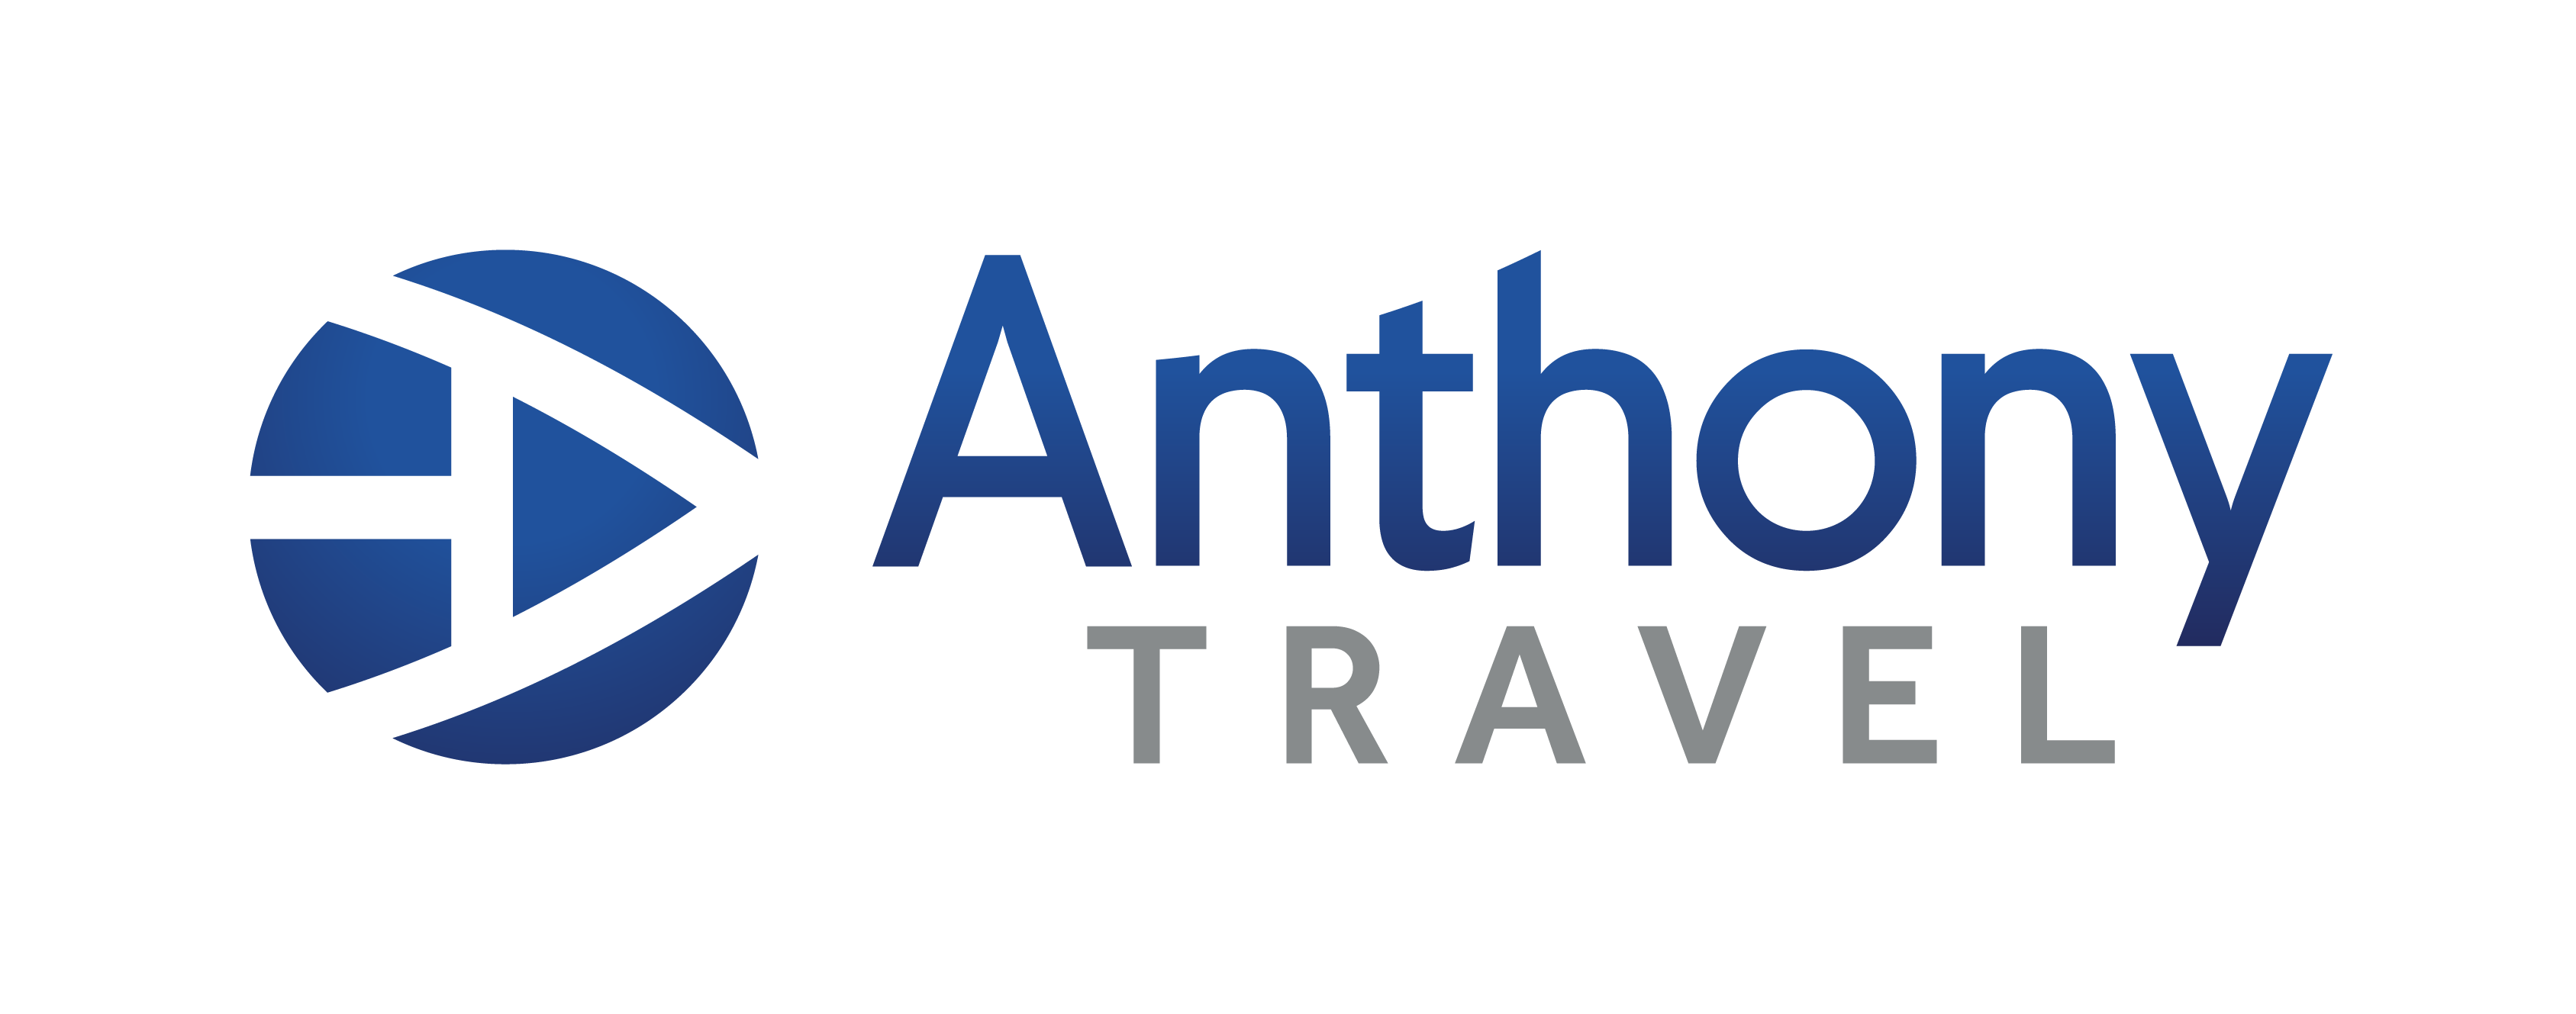 Anthony Travel logo